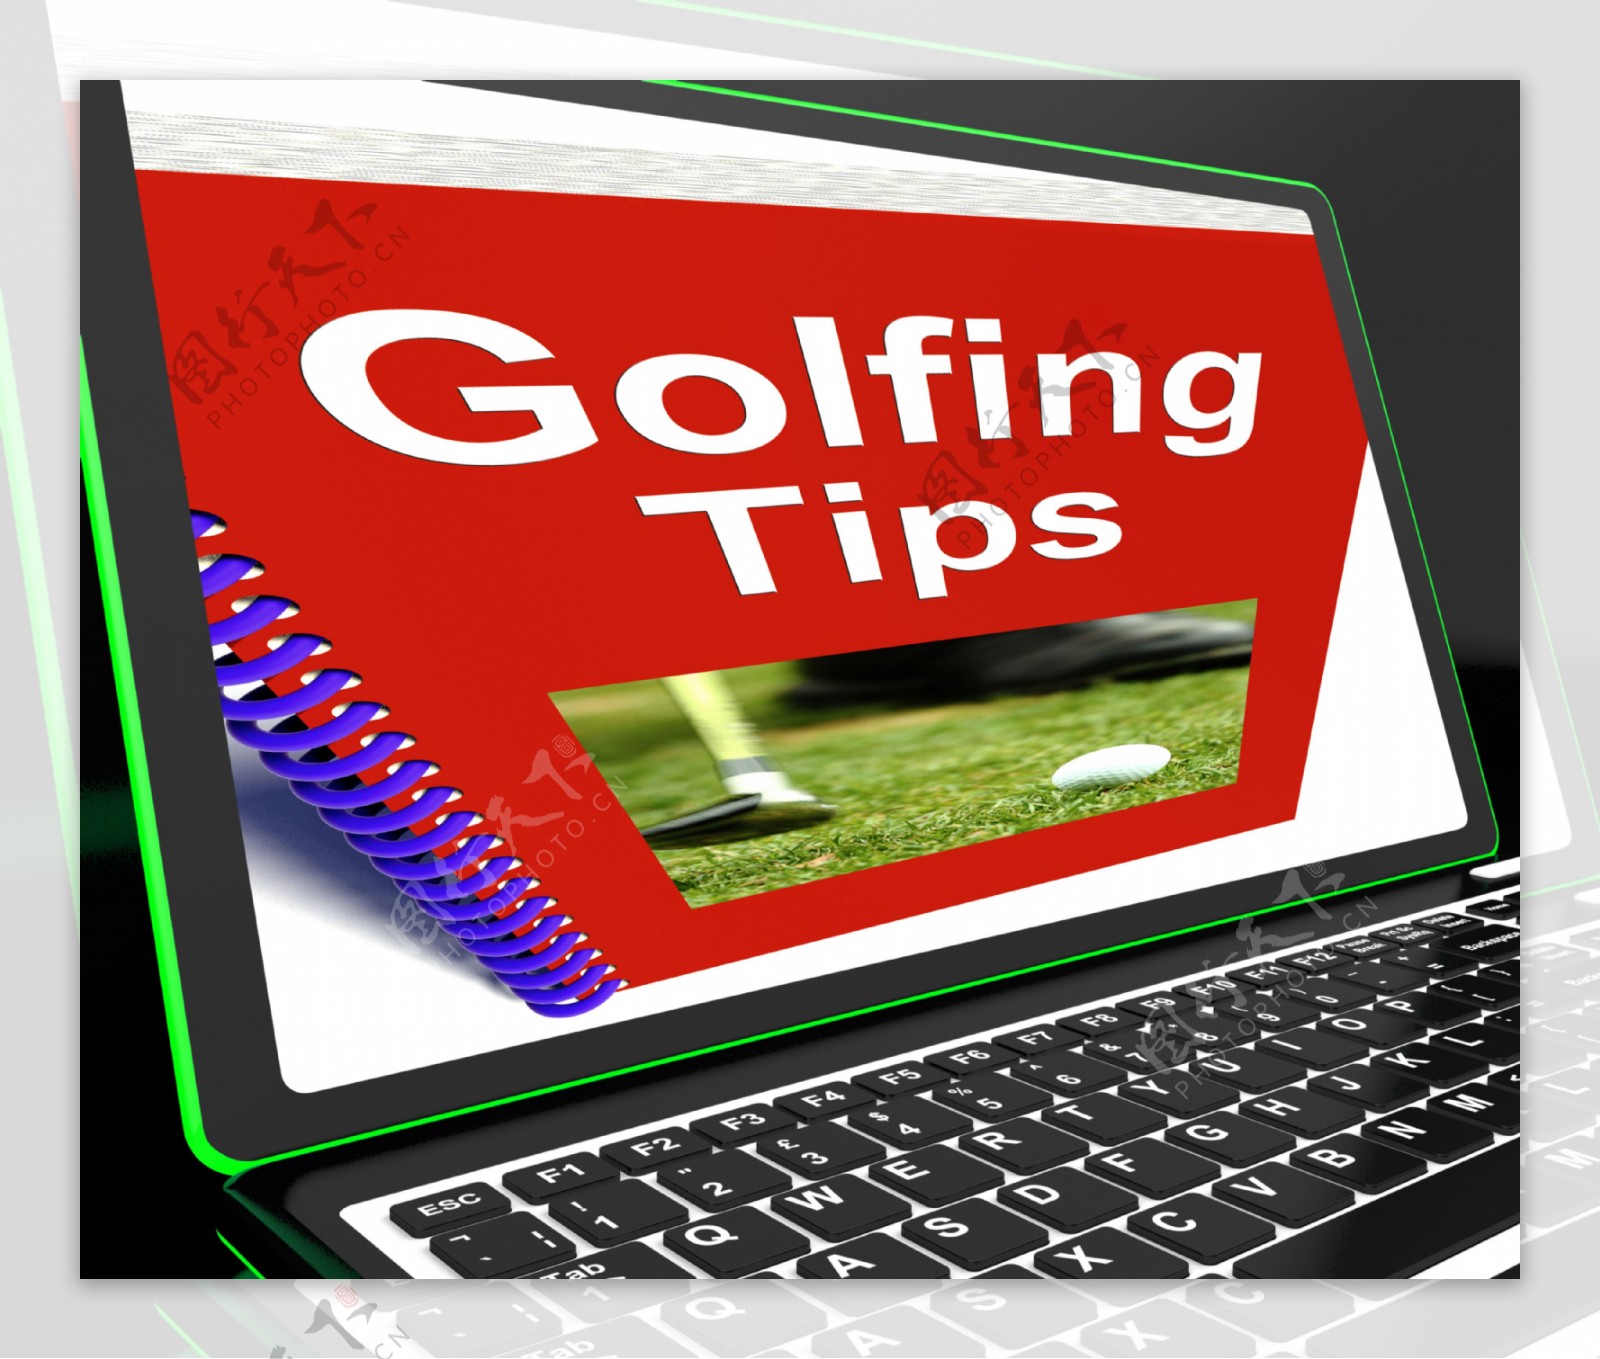 高尔夫技巧笔记本电脑显示打高尔夫球的建议